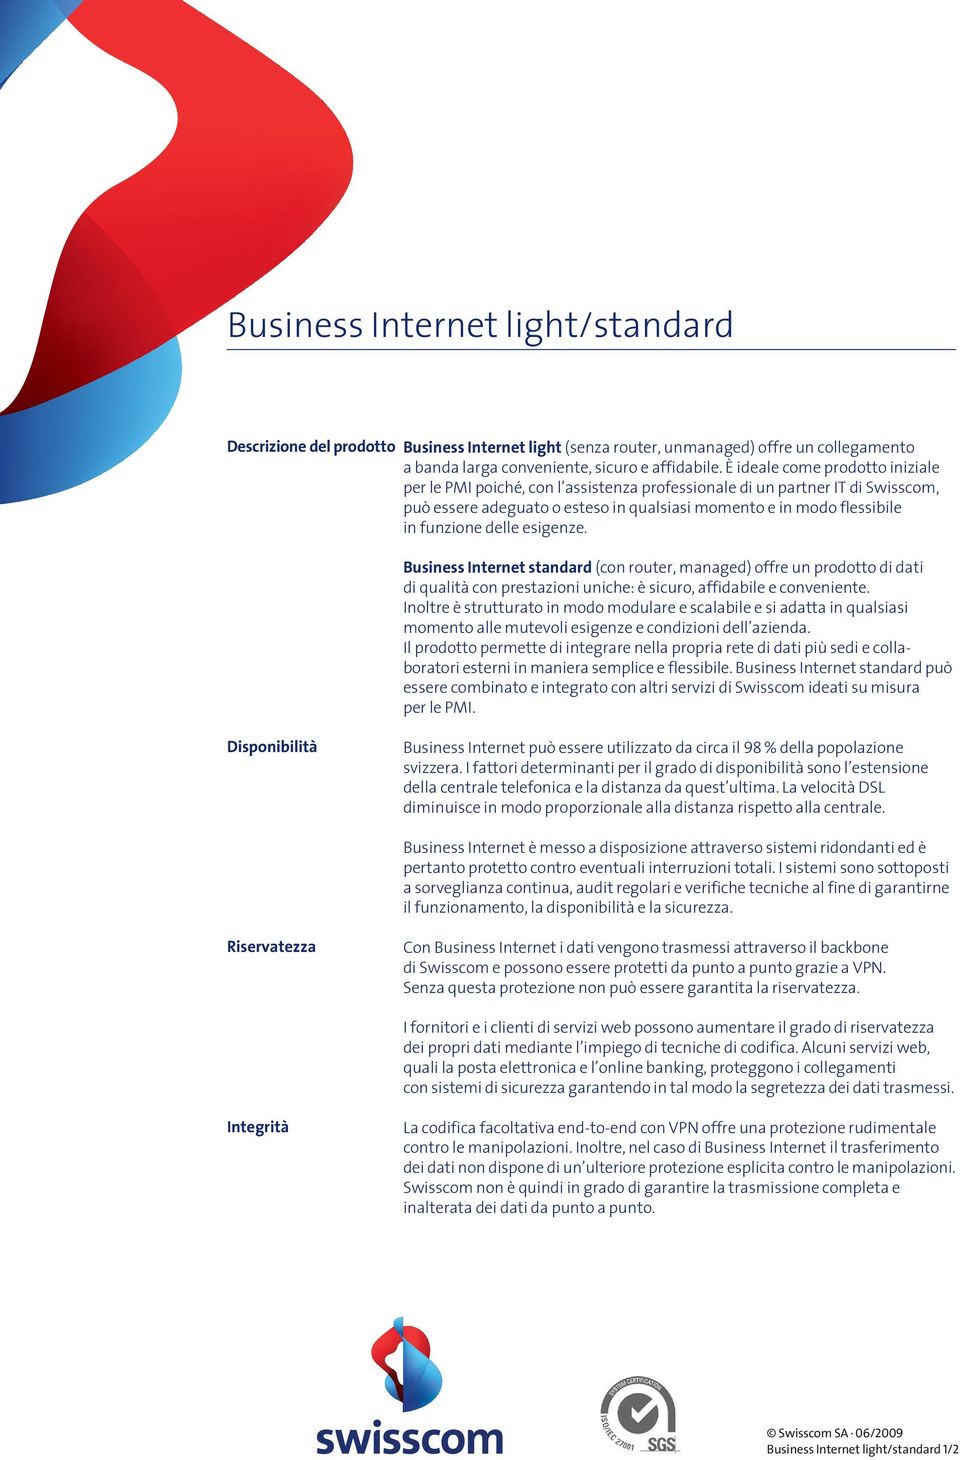 delle esigenze. Business Internet standard (con router, managed) offre un prodotto di dati di qualità con prestazioni uniche: è sicuro, affidabile e conveniente.